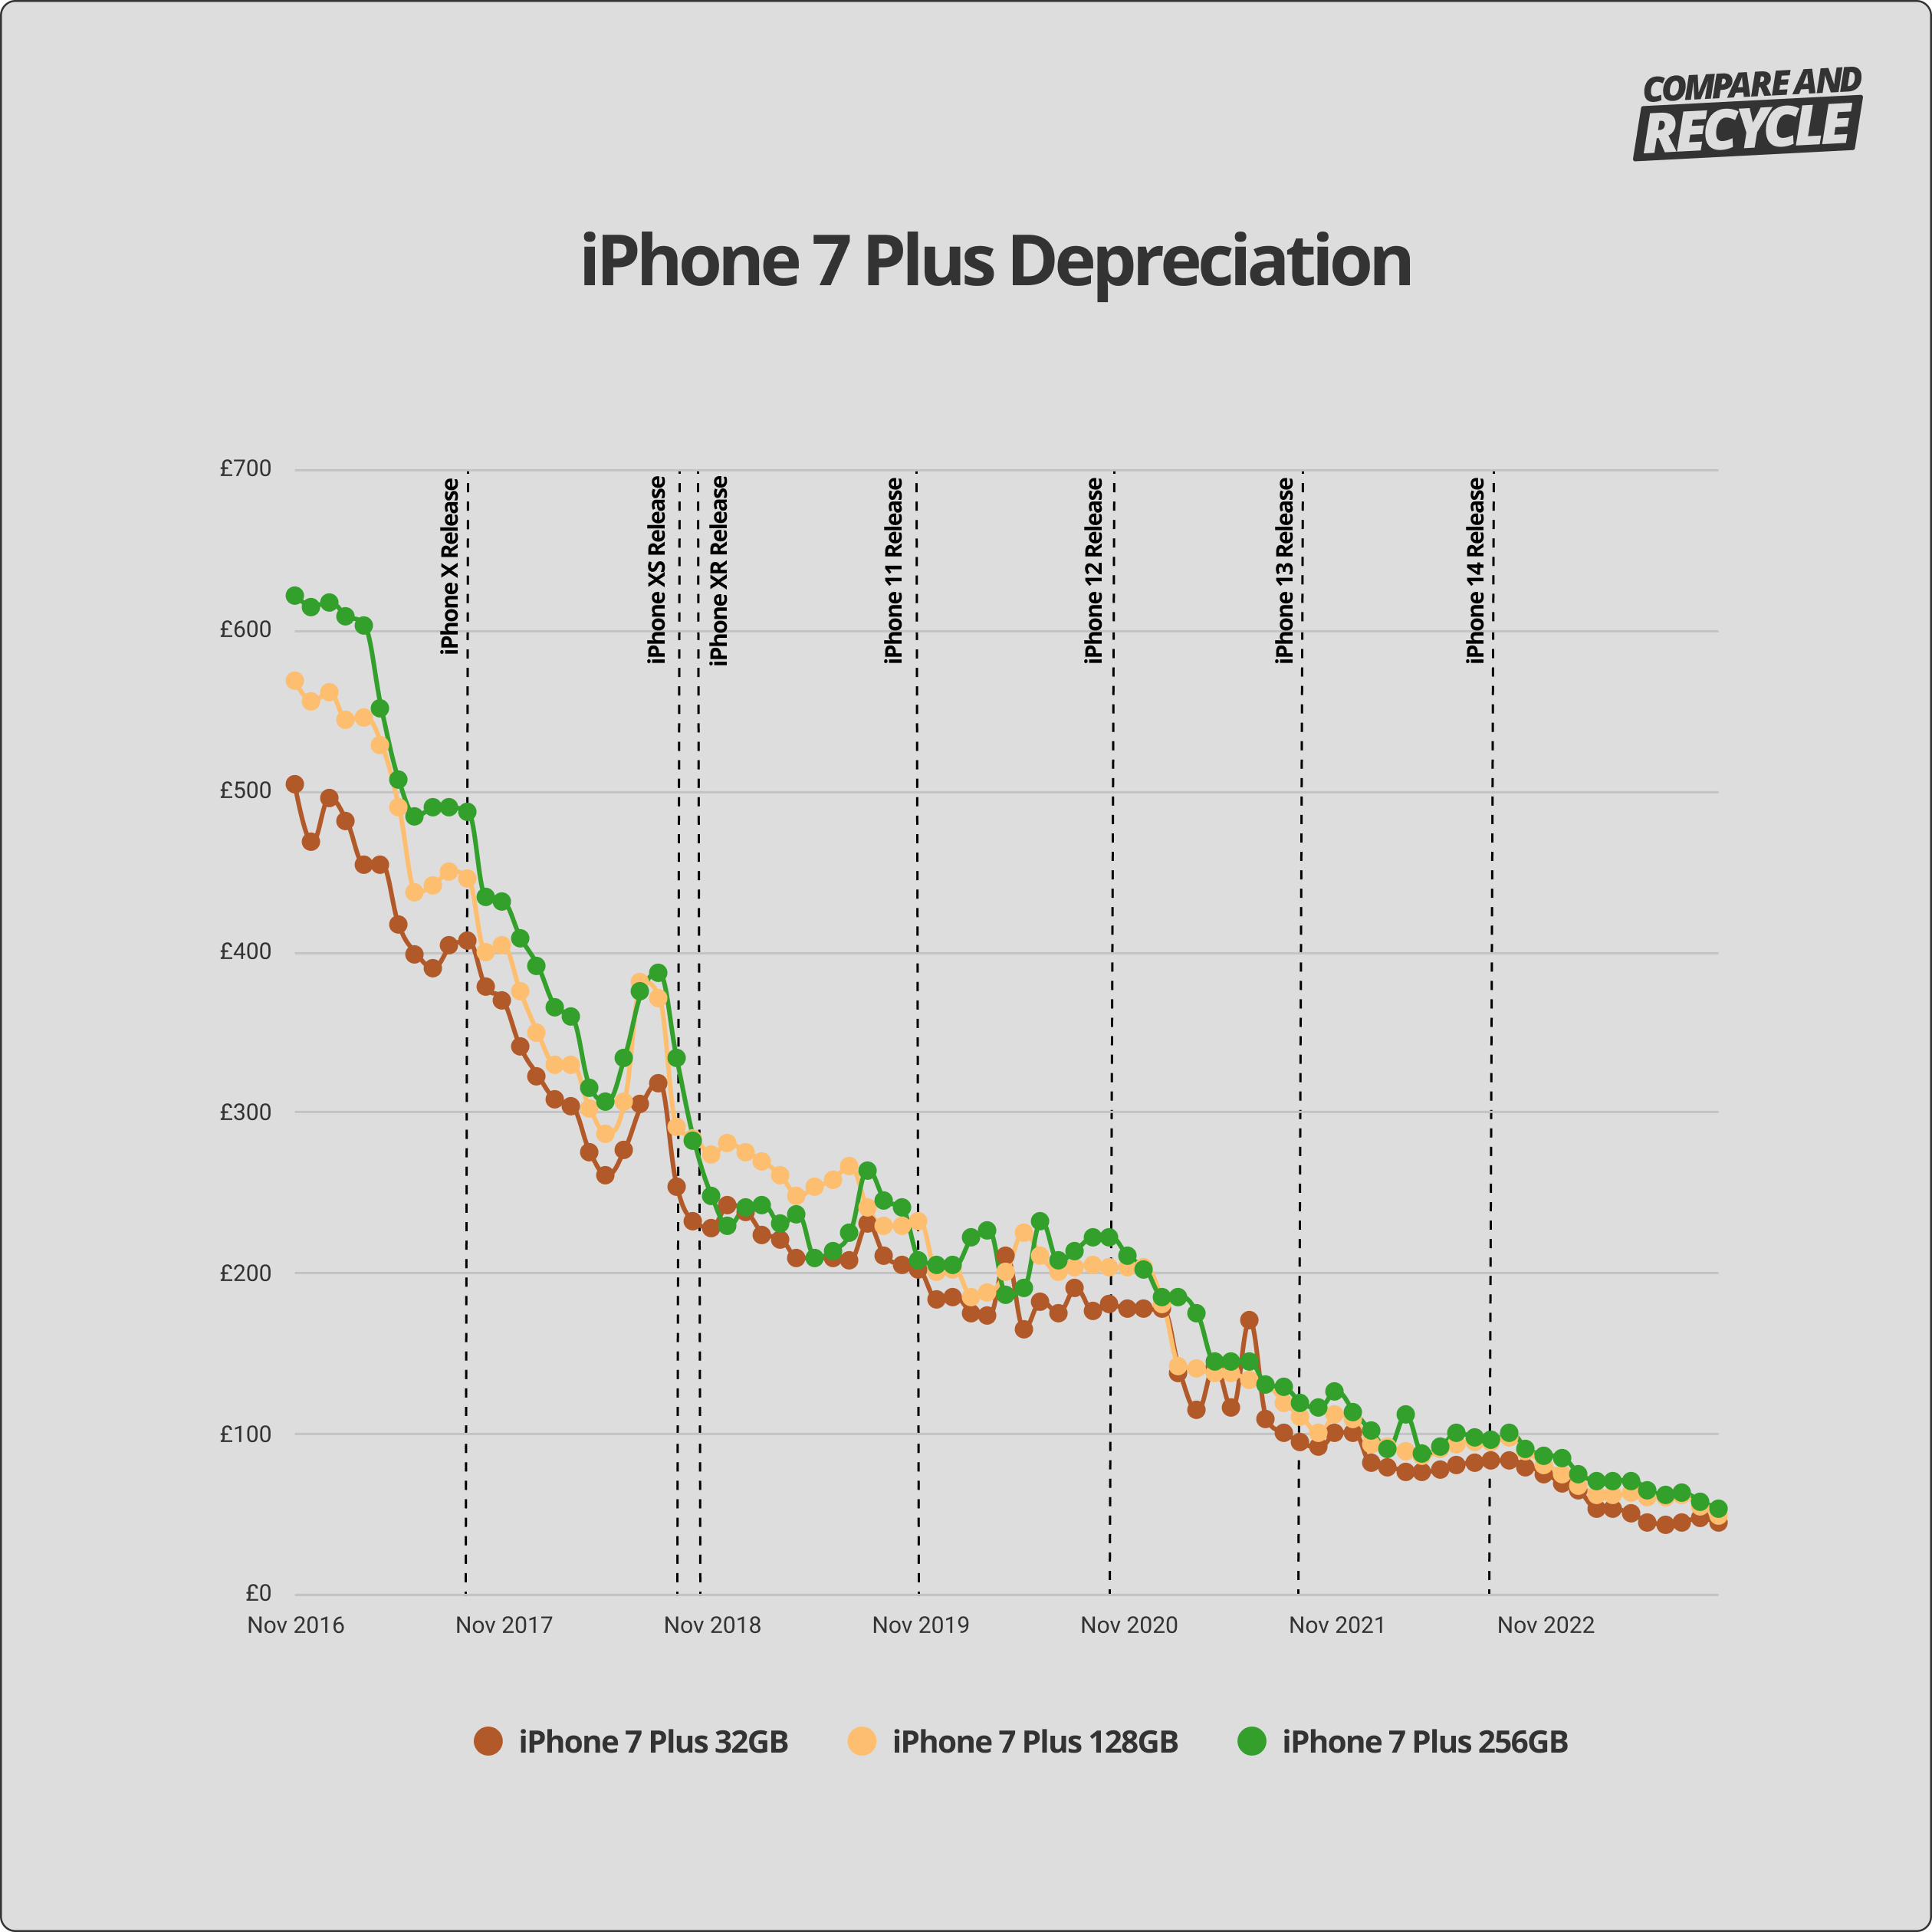 iPhone 7 Plus depreciation graph